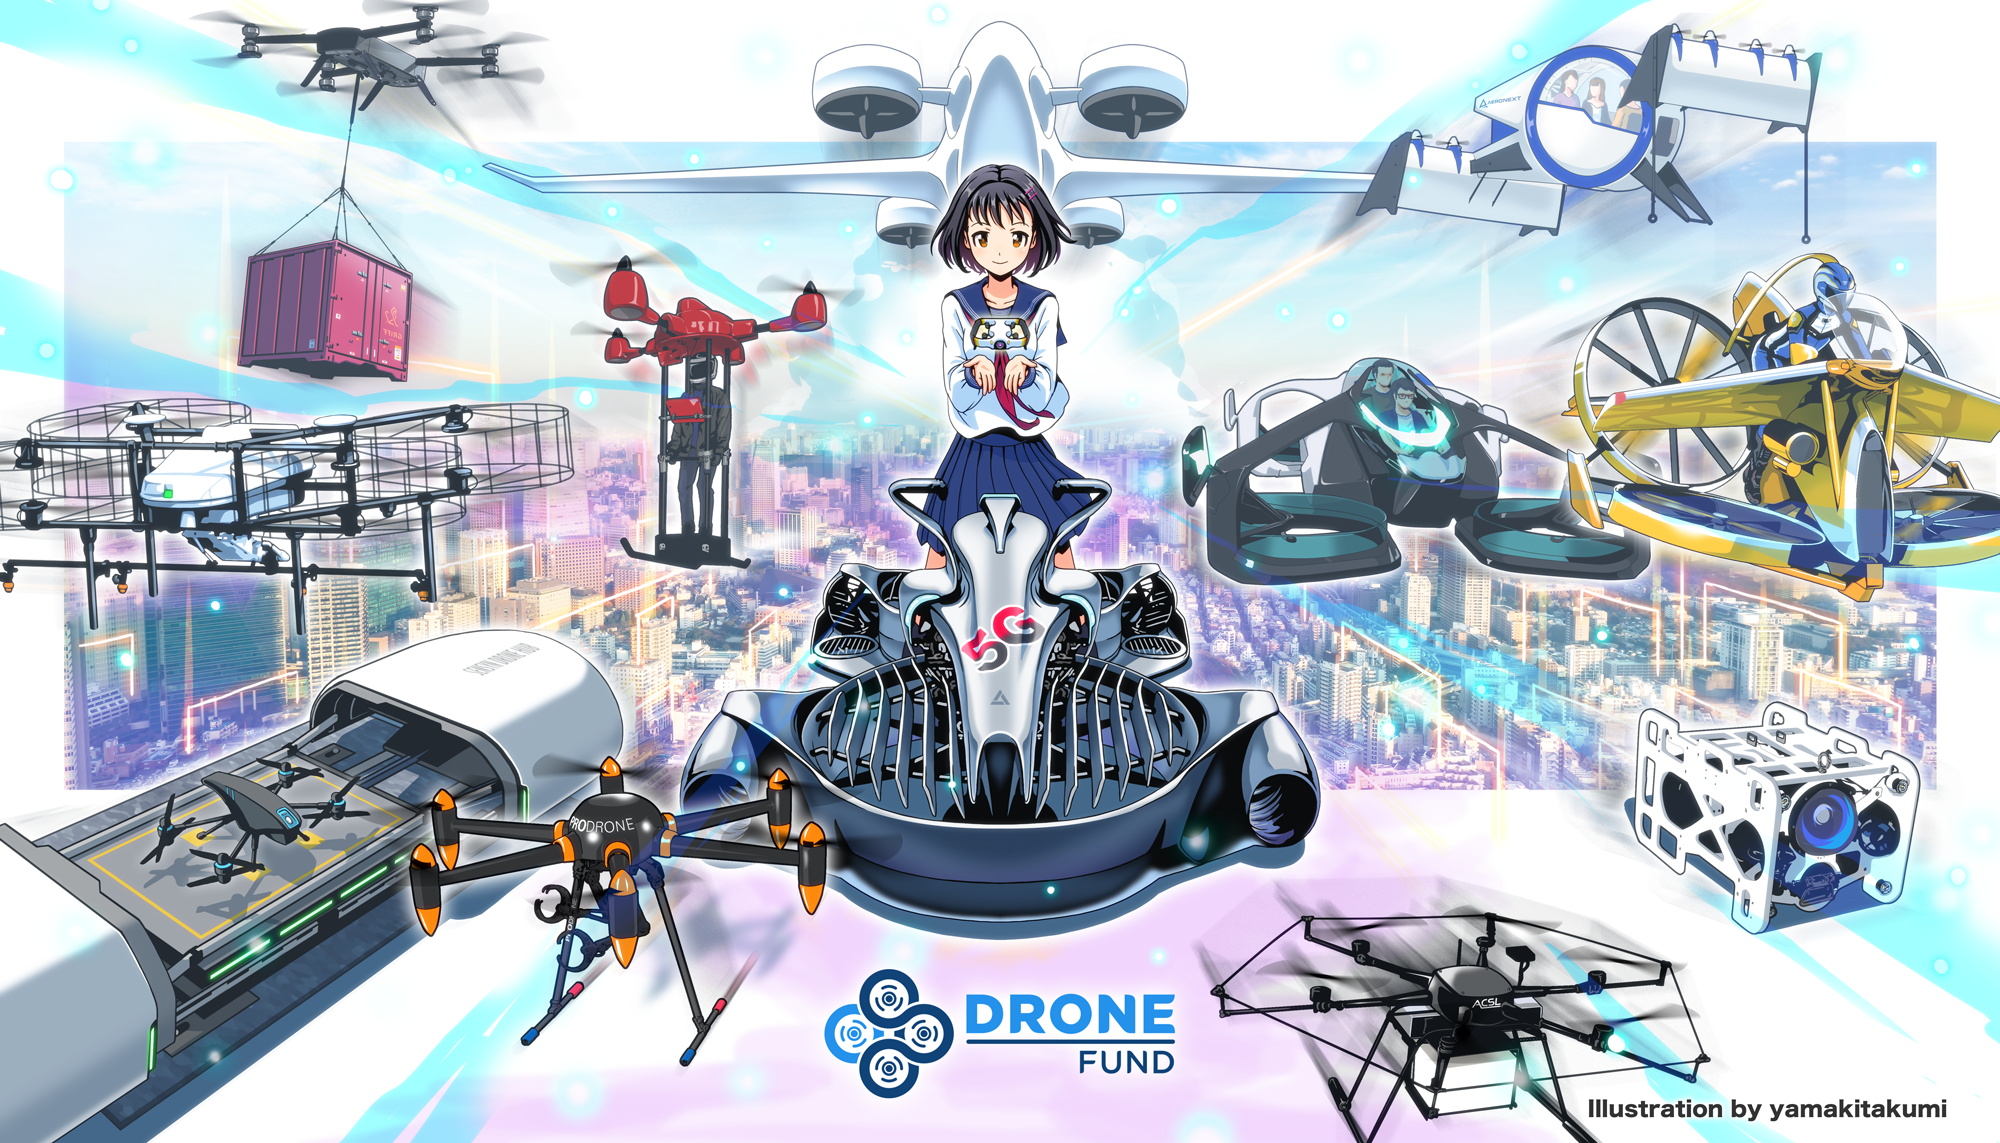 Drone Fund 設立4年目をむかえ 空の産業革命を加速 代表 千葉功太郎のパイロット免許取得を追い風に Dronefundのプレスリリース